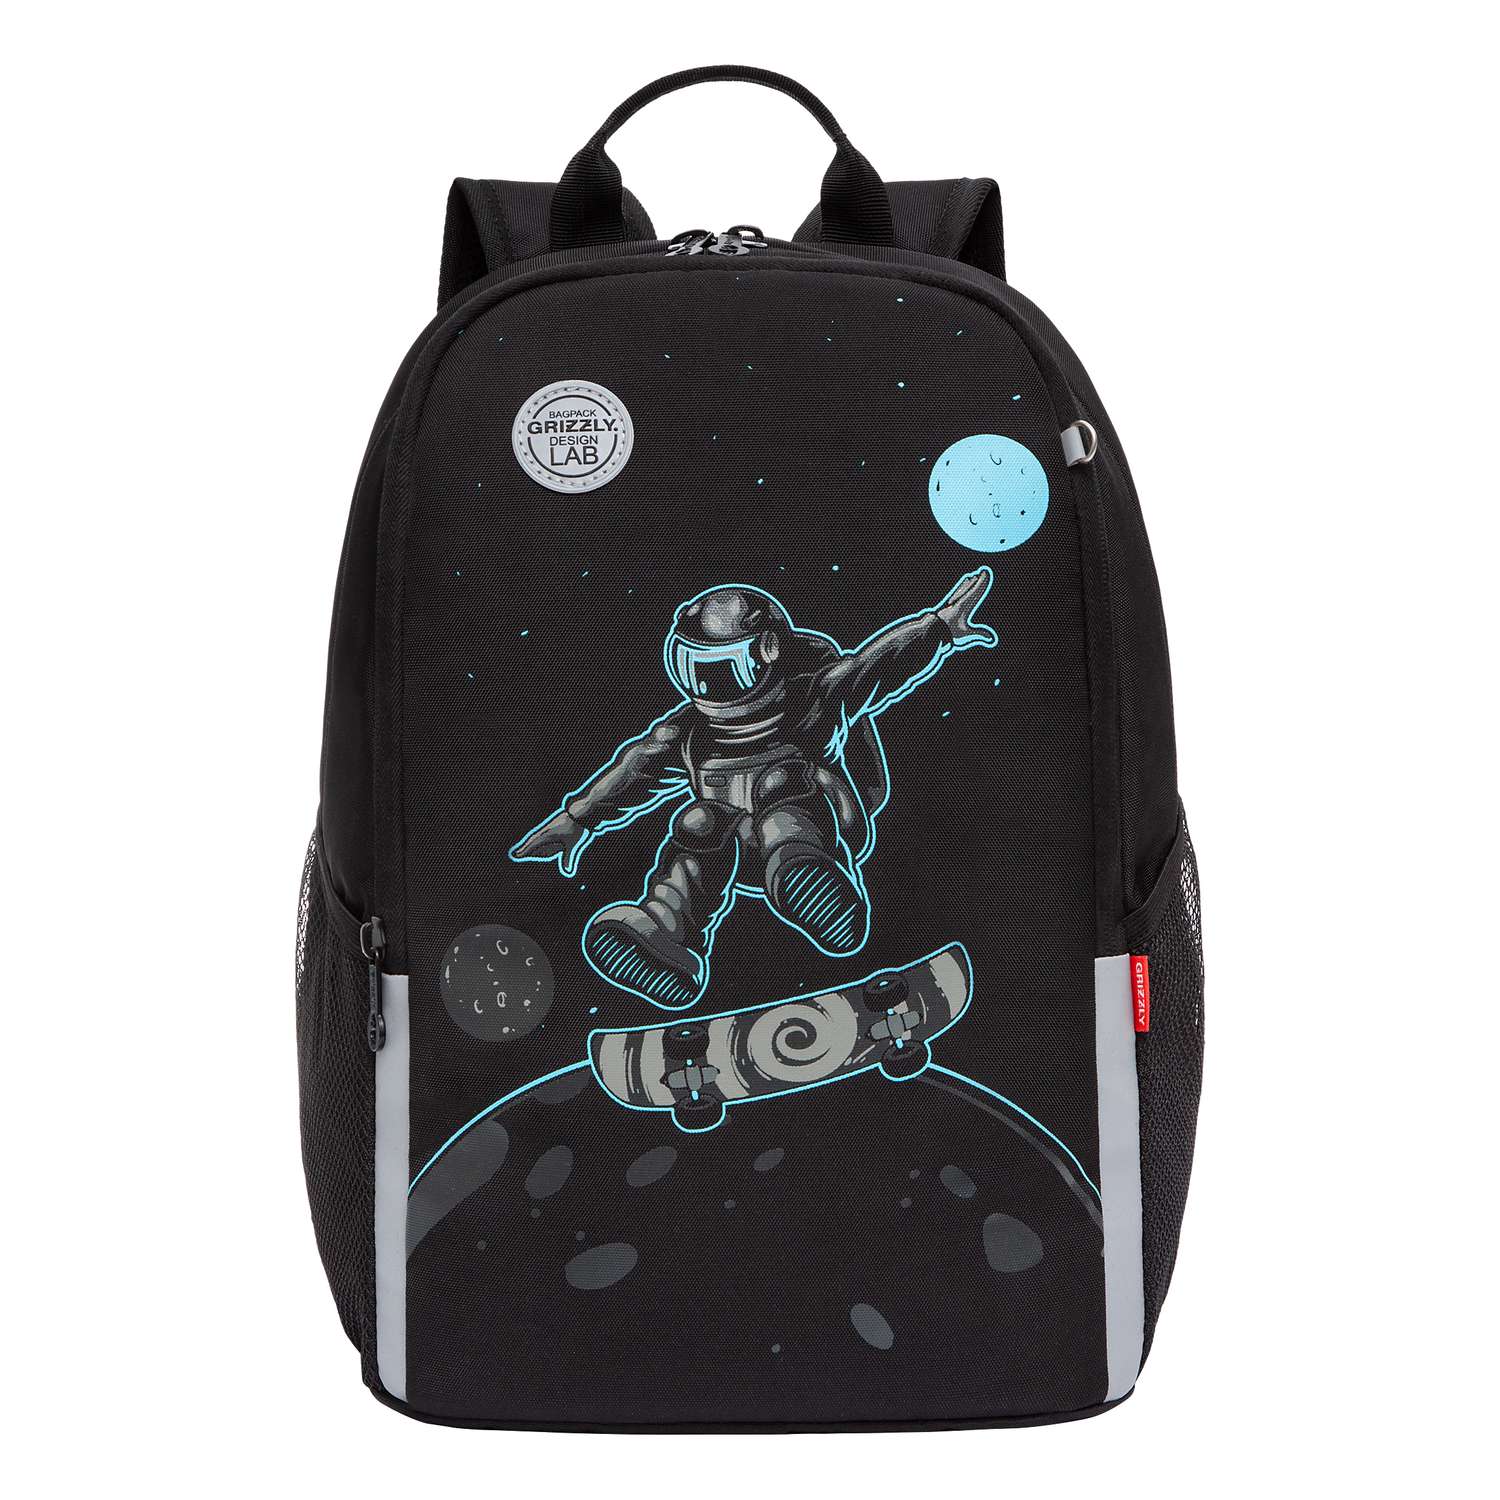 Рюкзак школьный Grizzly Черный-Голубой RB-251-2/2 - фото 2